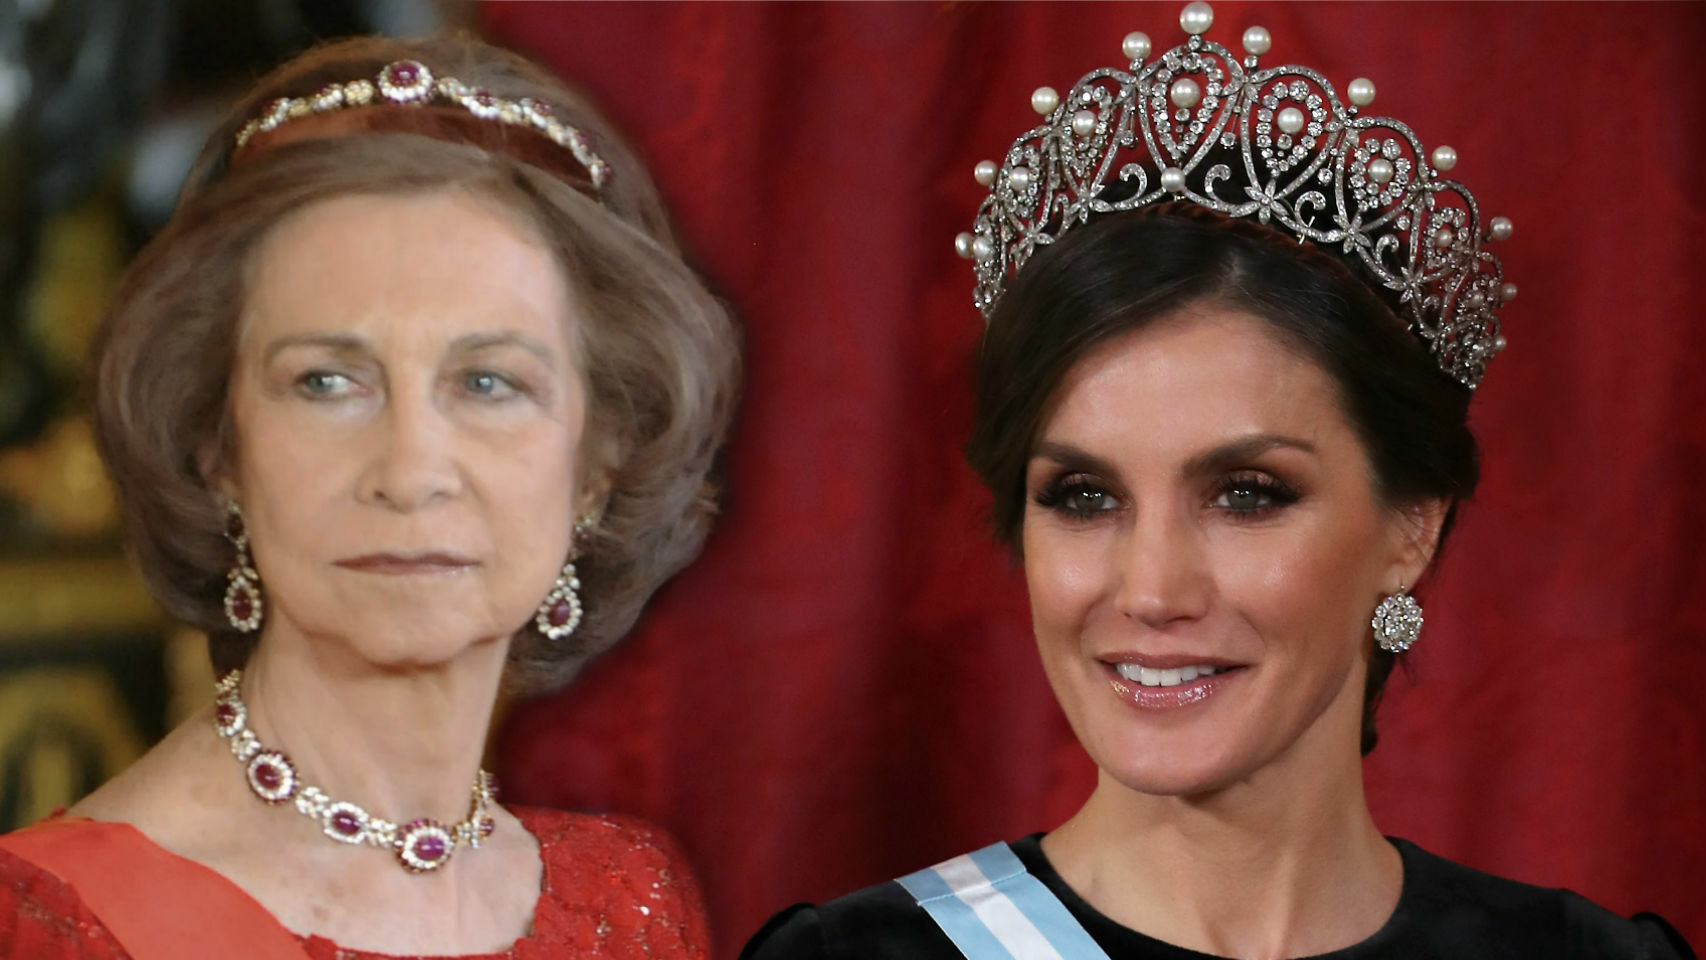 La reina Sofía con la tiara de Niarchos y la reina Letizia con la tiara Rusa.